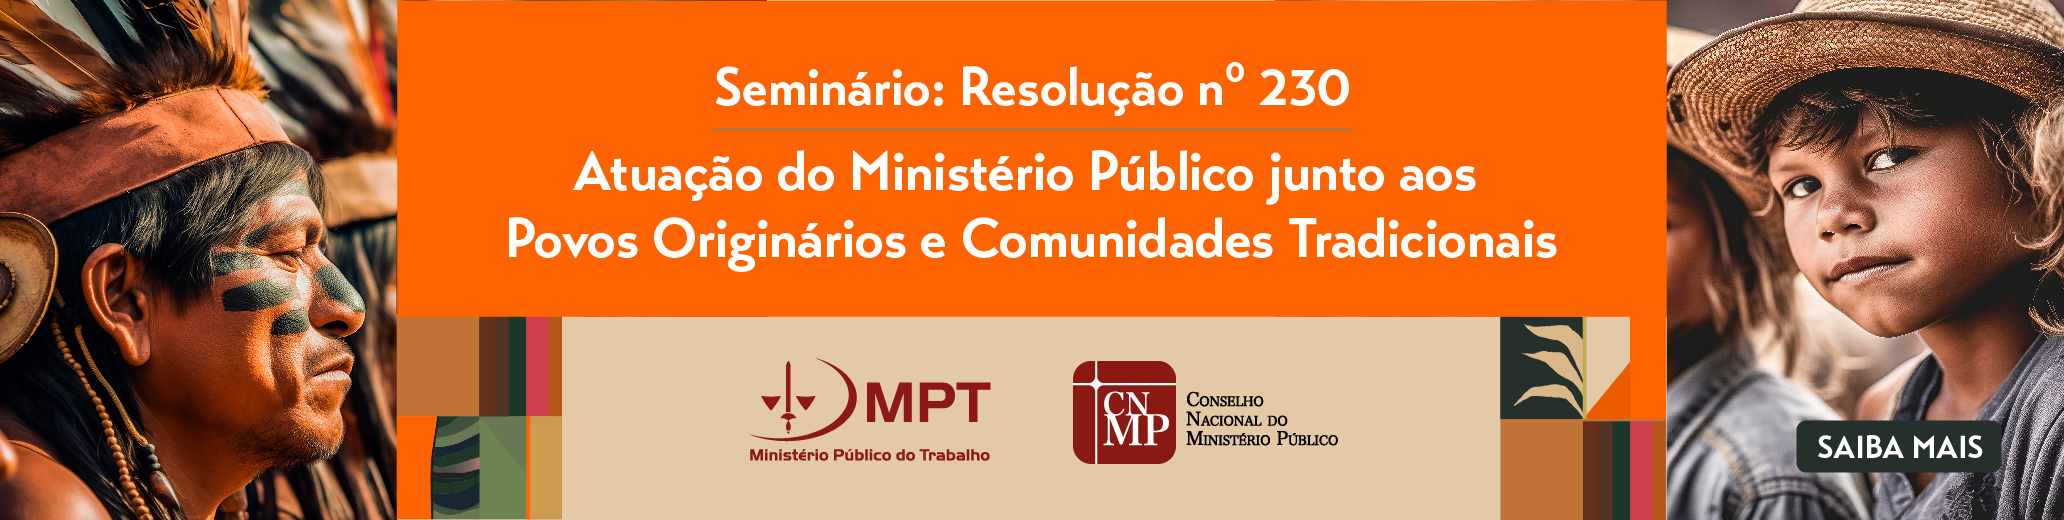 UNCMP_-_Seminário_230_-_Divulgação_Banner_web_1.jpg - 805,37 kB